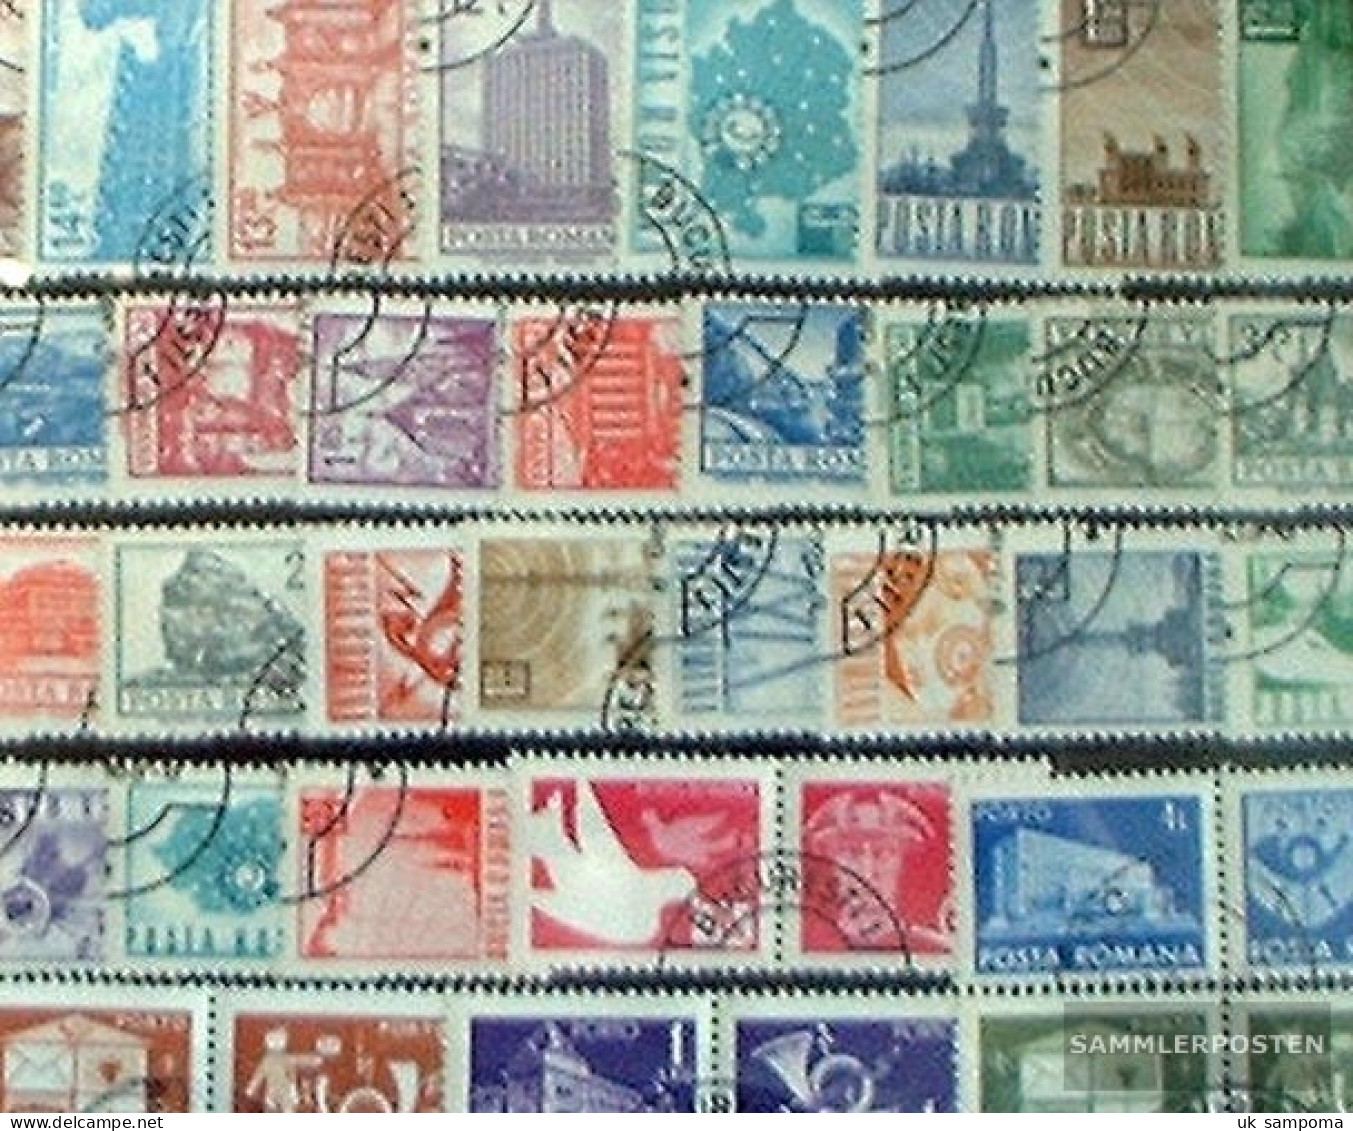 Romania 100 Different Stamps - Sammlungen